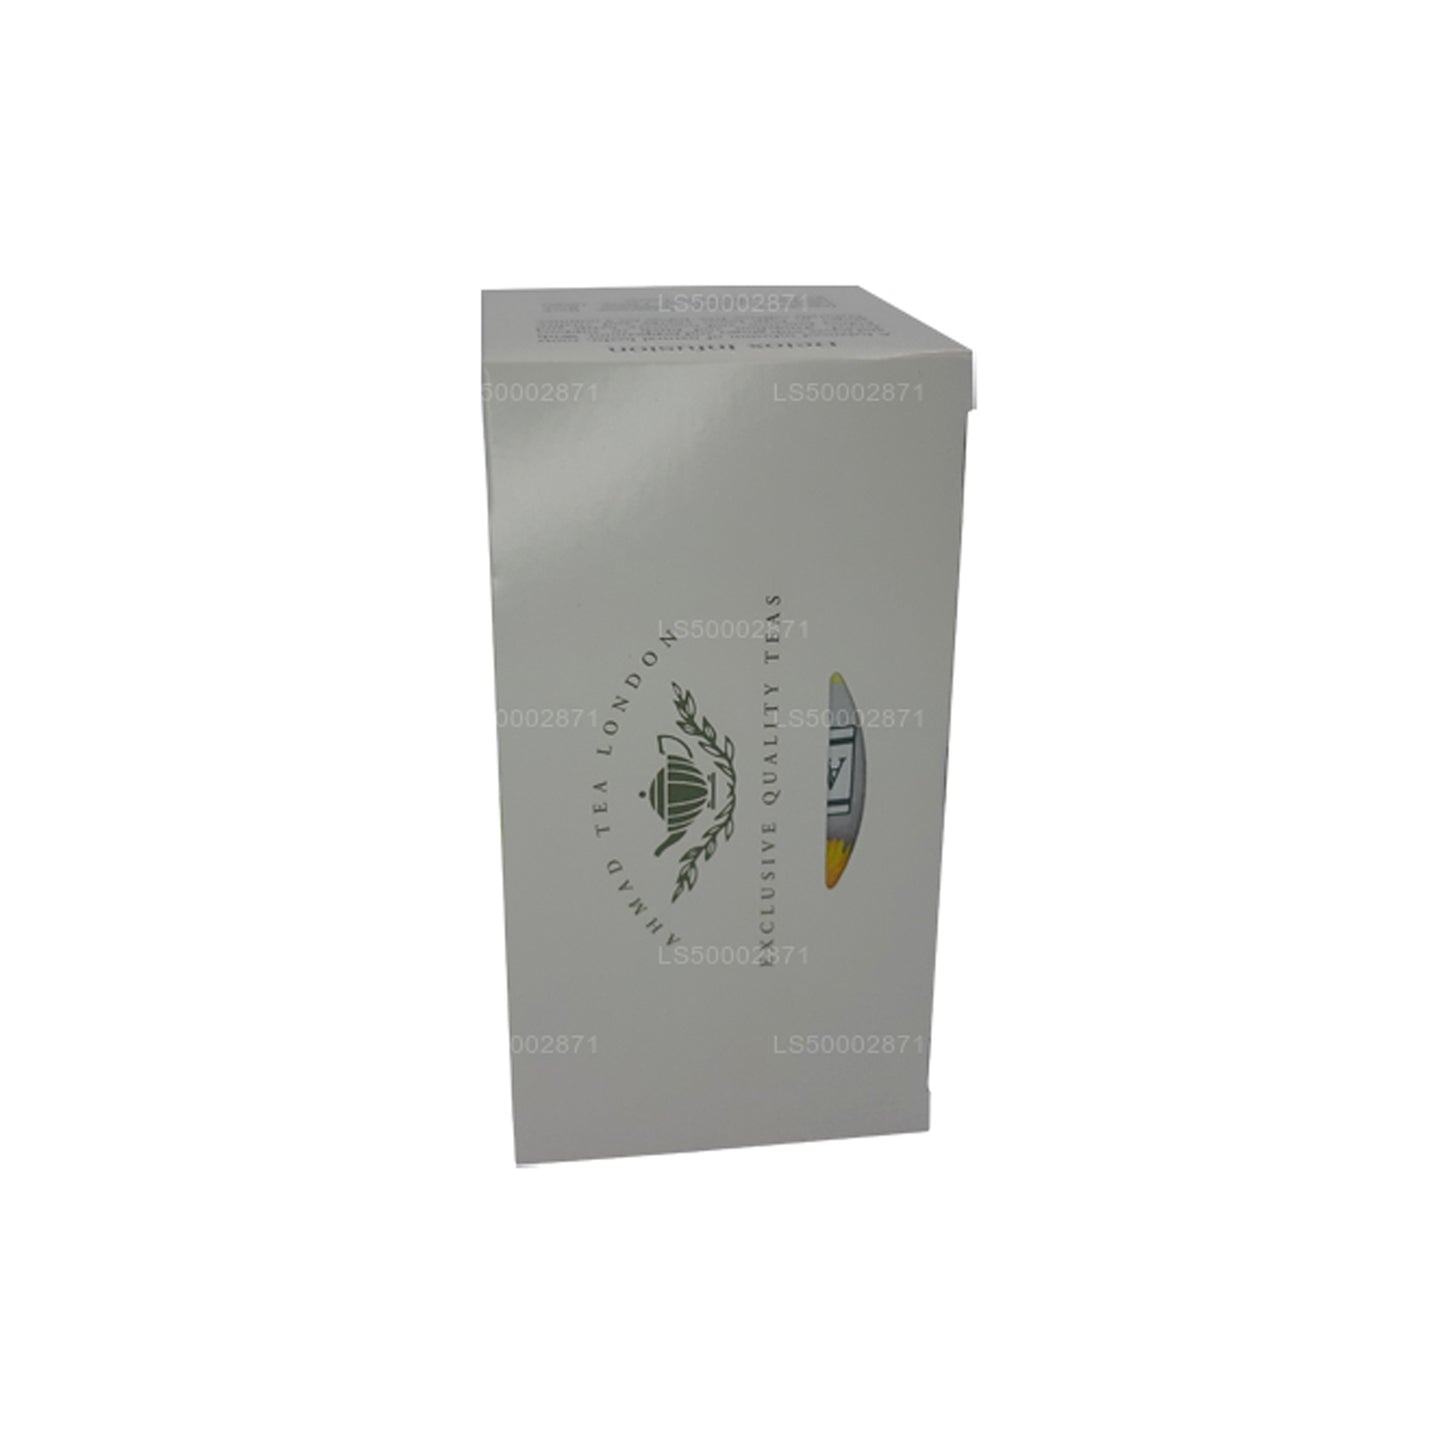 Детокс-очищающее средство с чаем Ahmad (20 пакетиков)